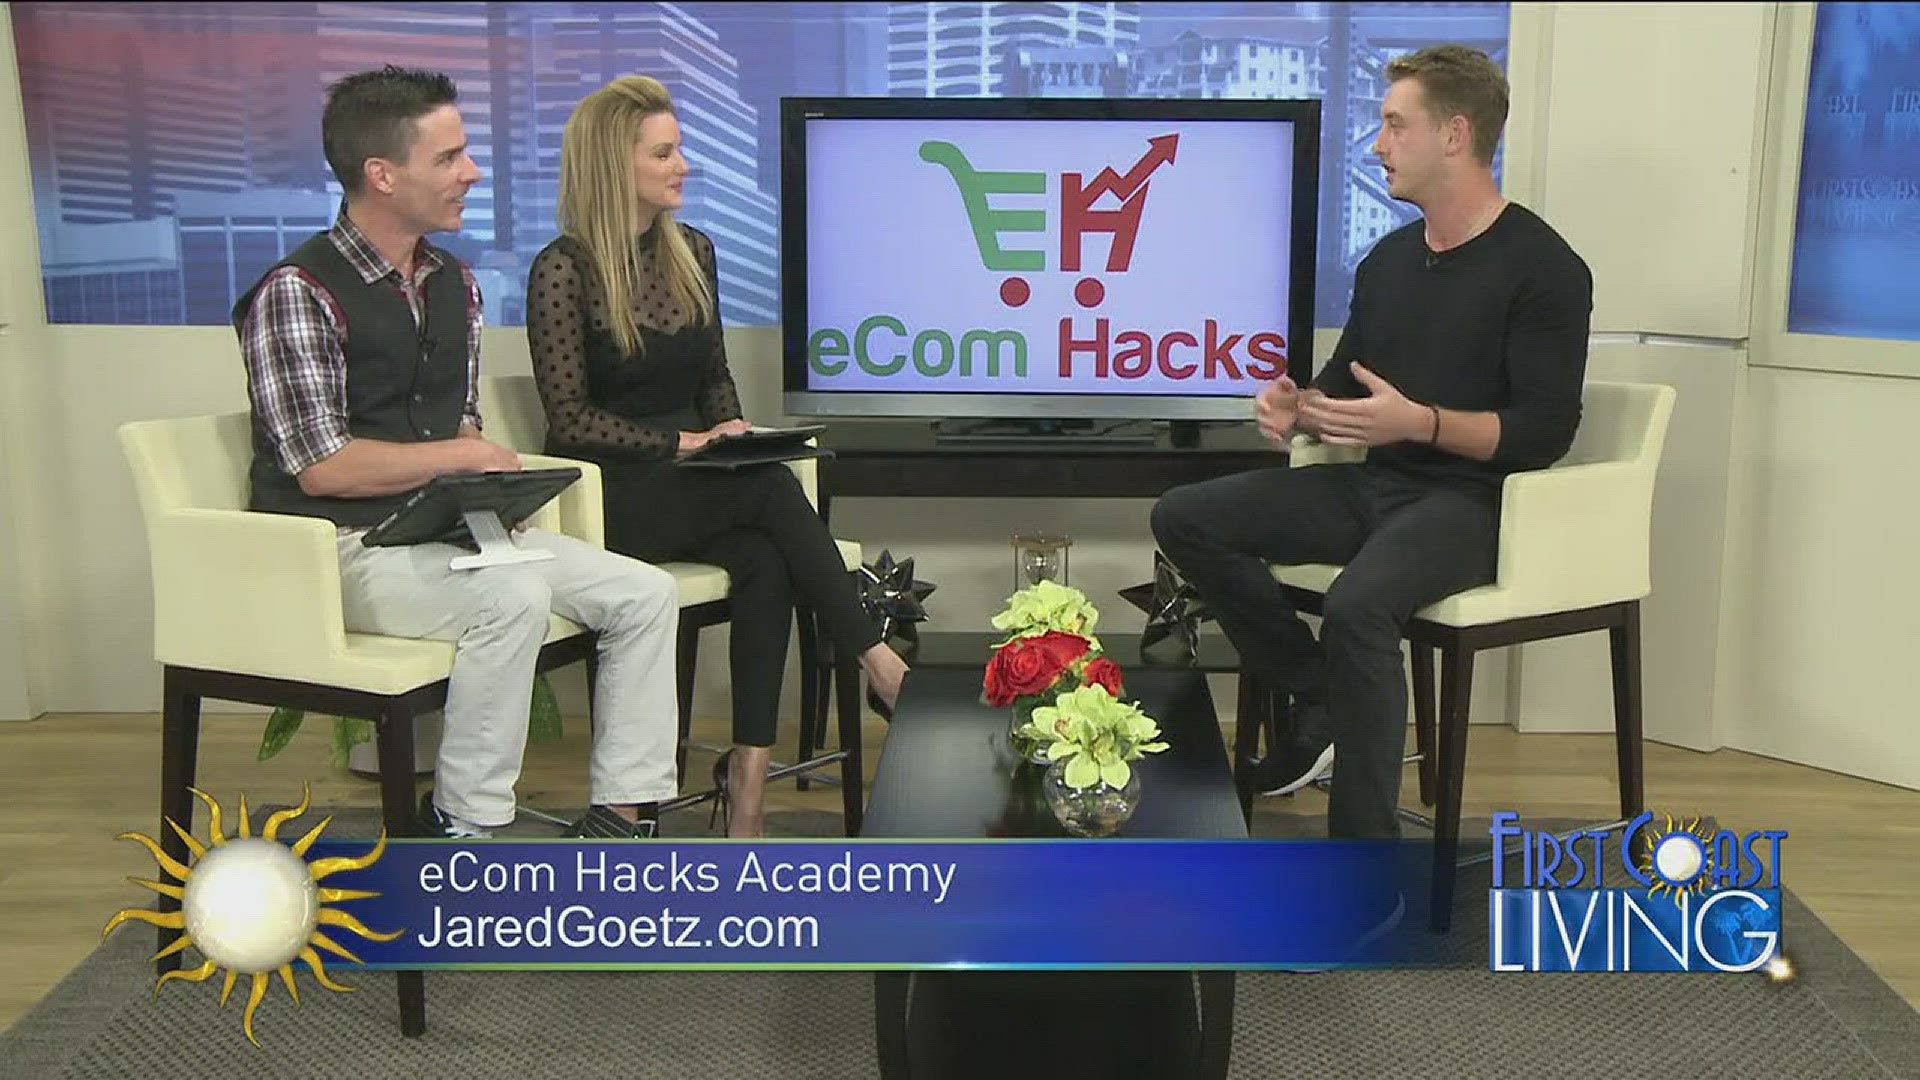 eCom Hacks Academy